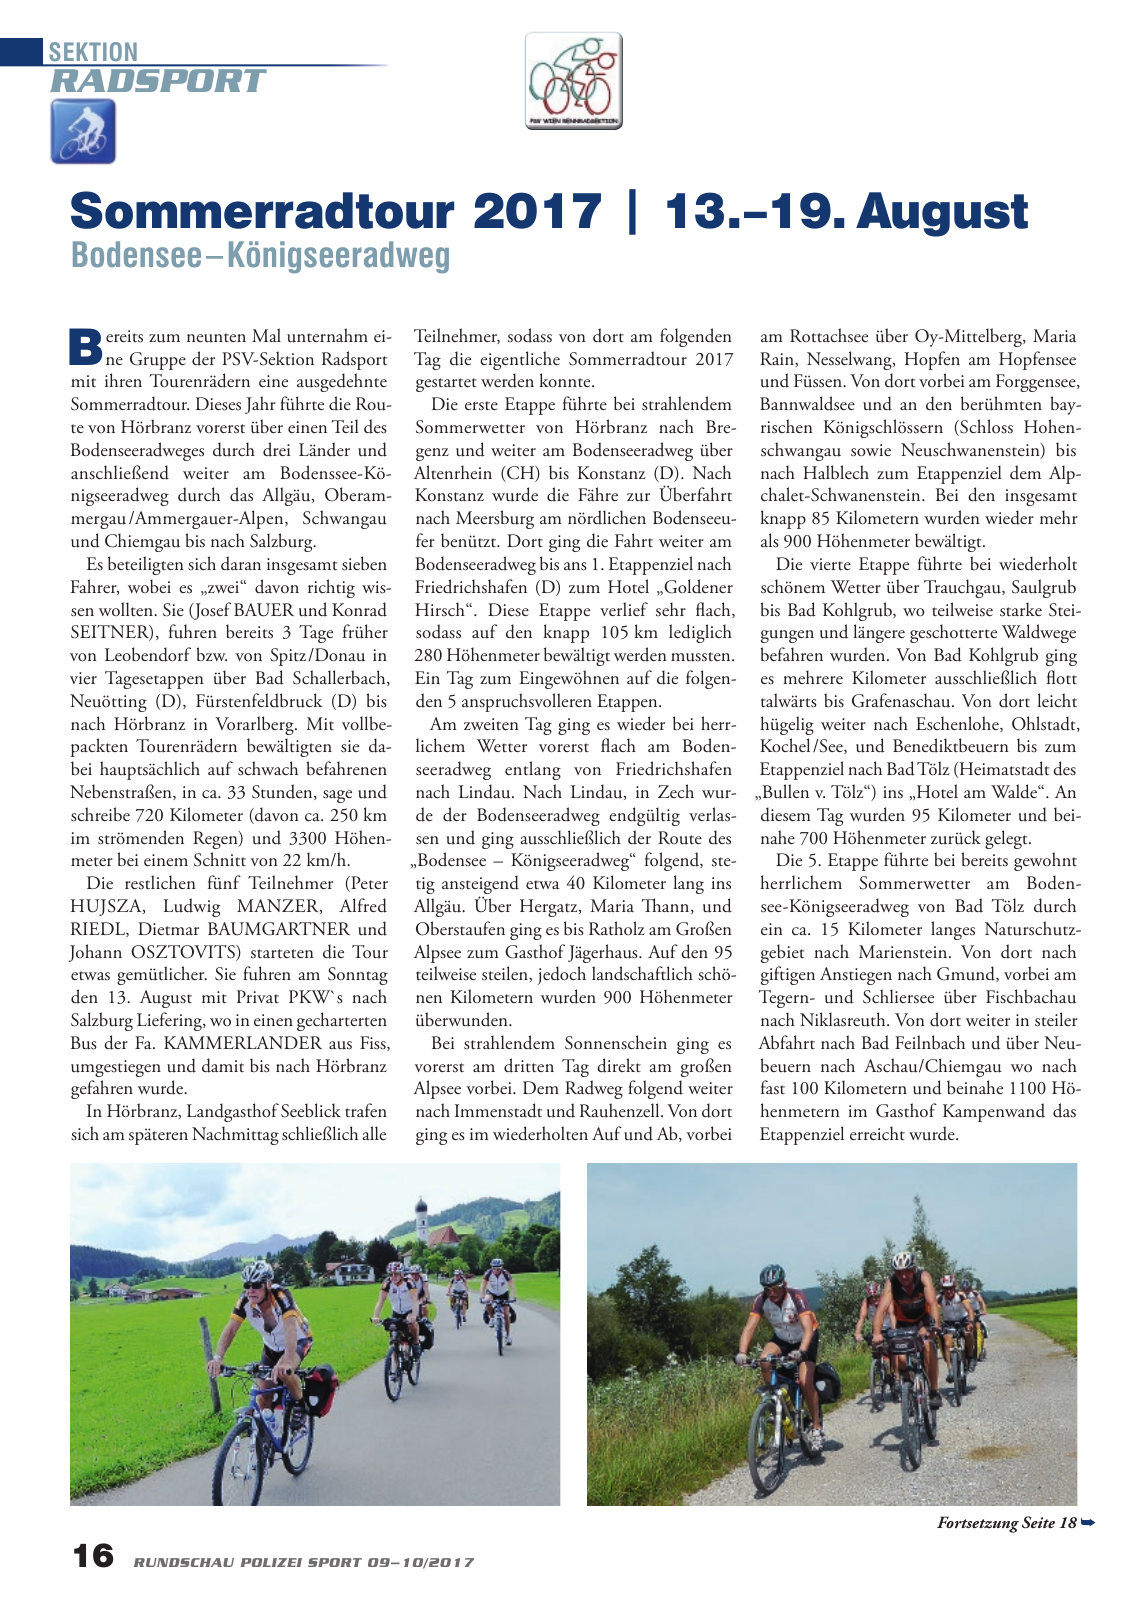 Vorschau Rundschau Polizei Sport 09-10/2017 Seite 16